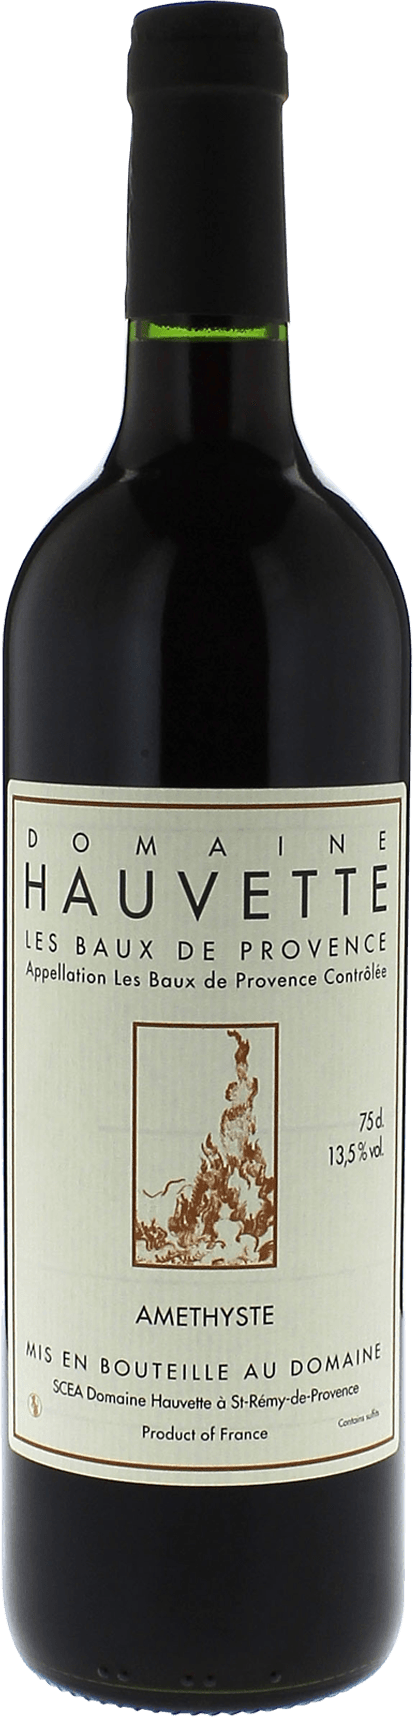 Domaine hauvette amethyste 2016  AOC Baux de Provence, Slection provence rouge